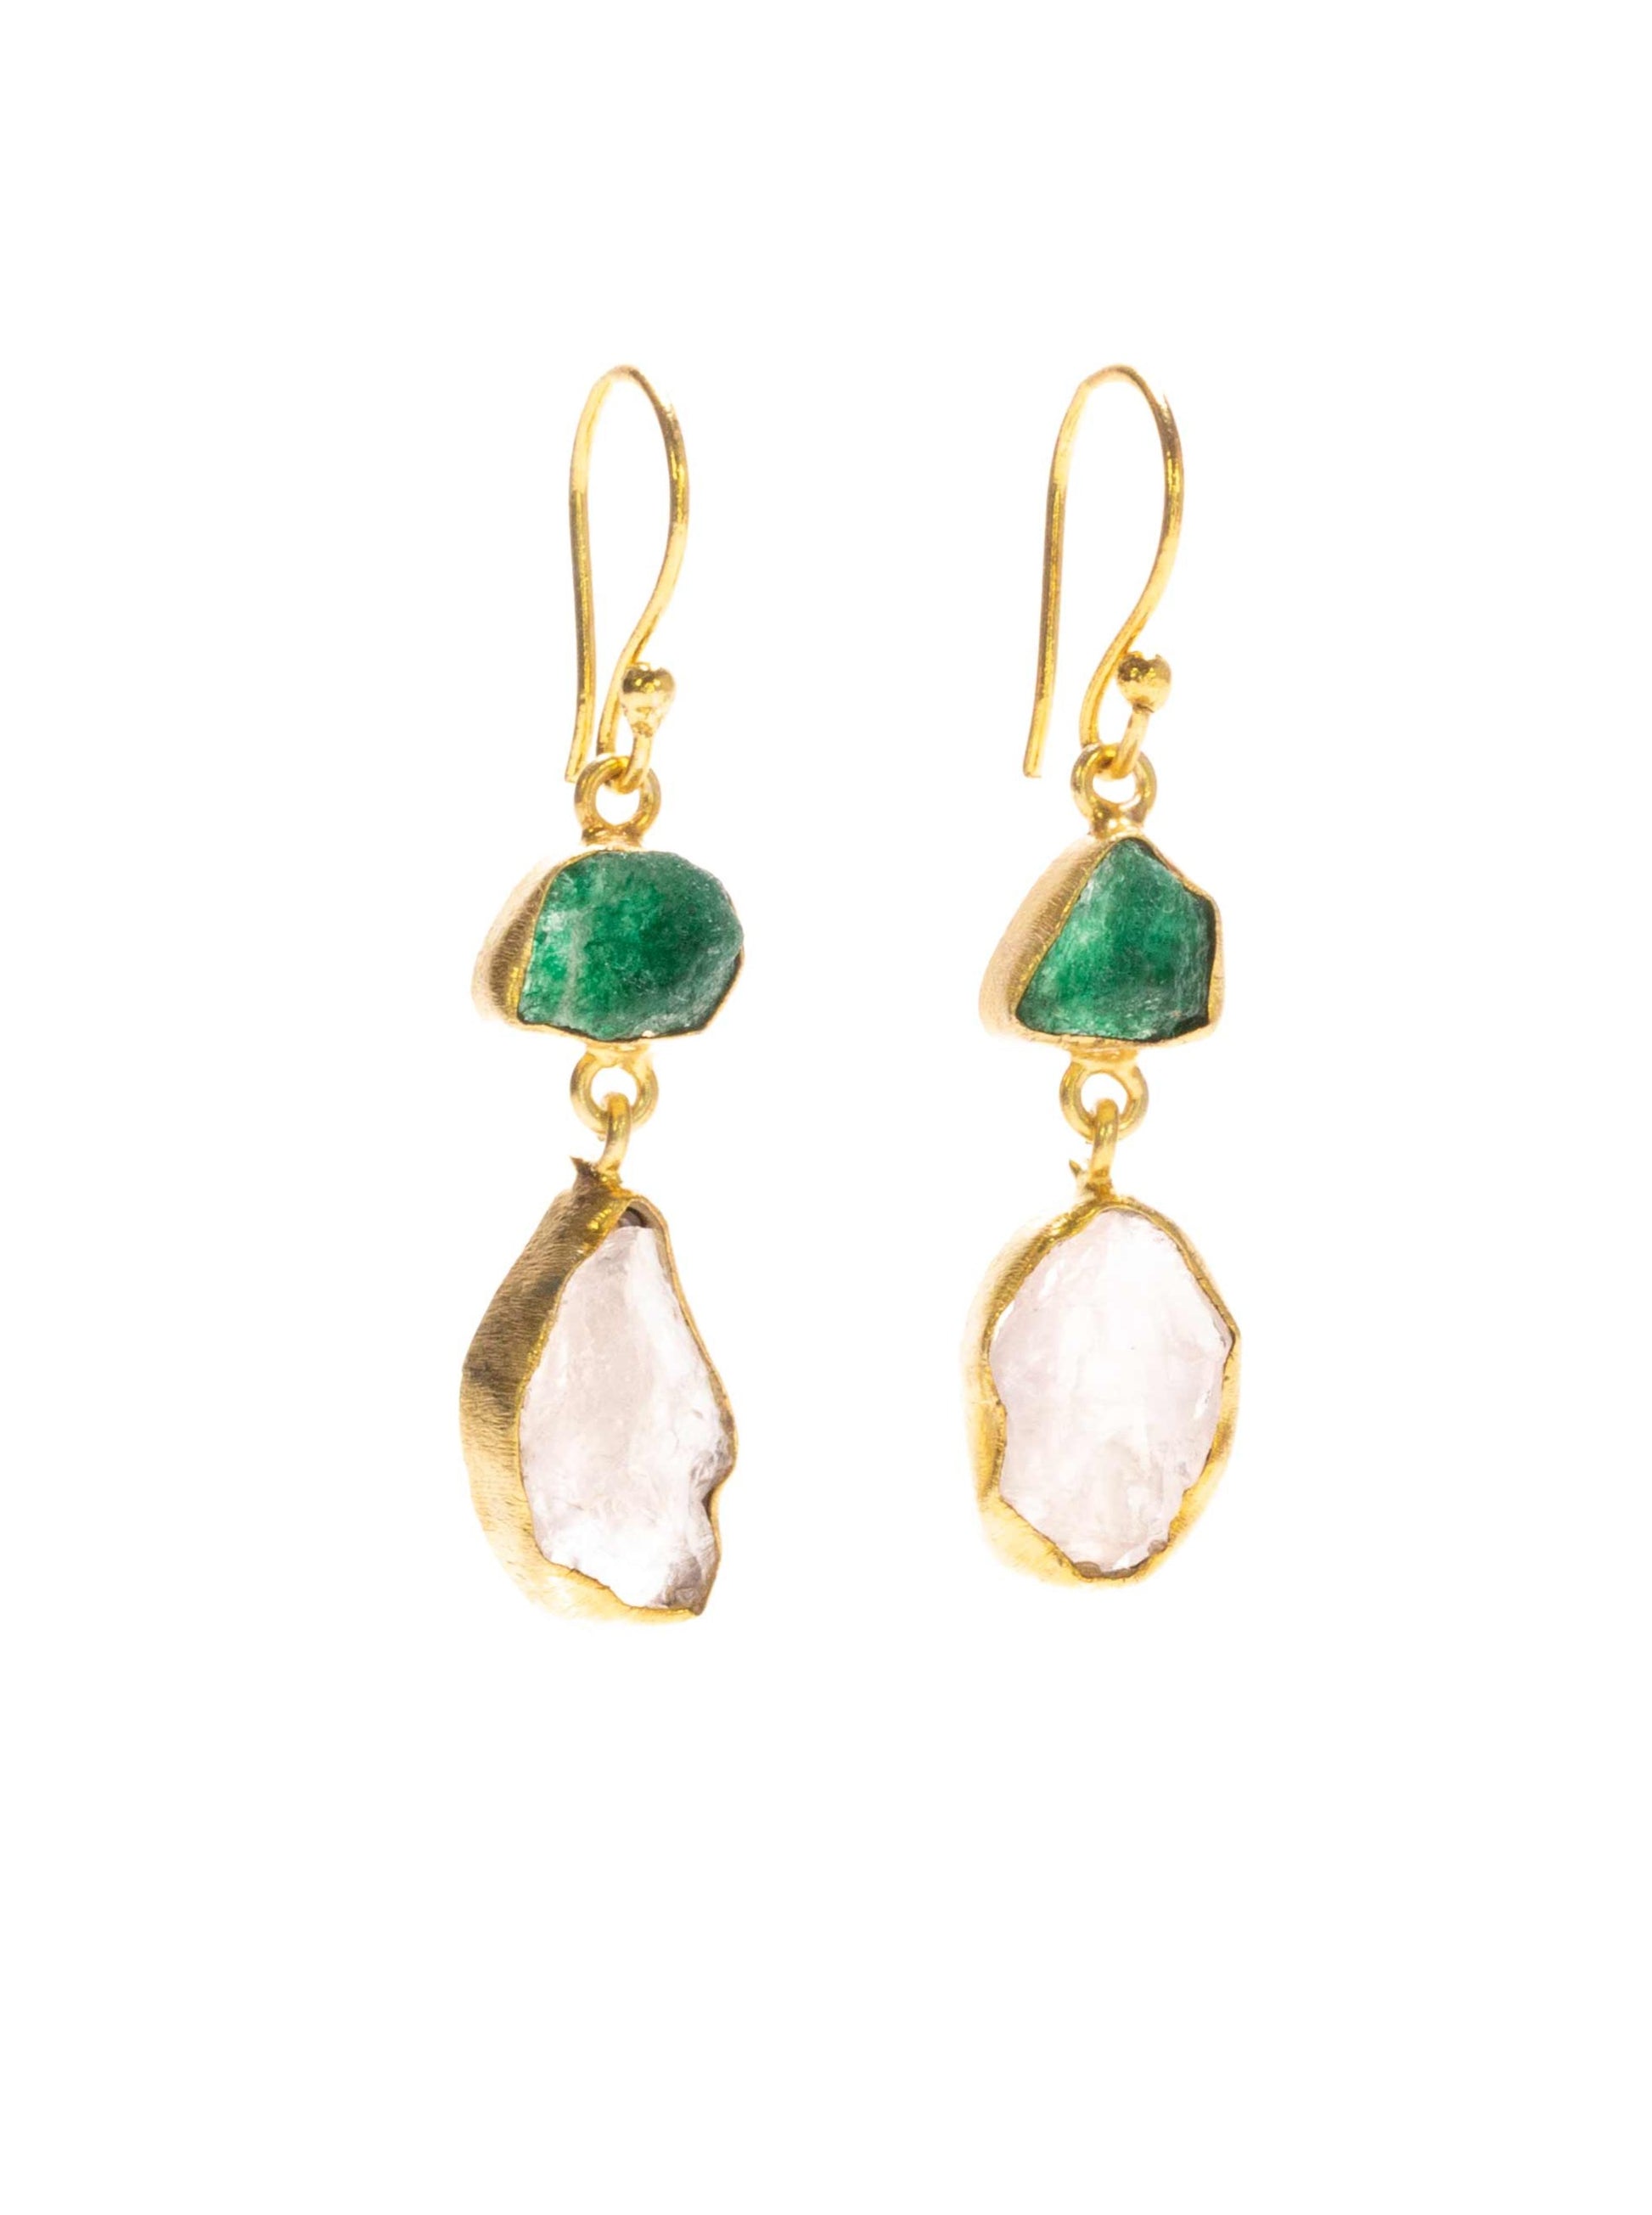 Gold Luxe earrings - aventurine and rose quartz earrings